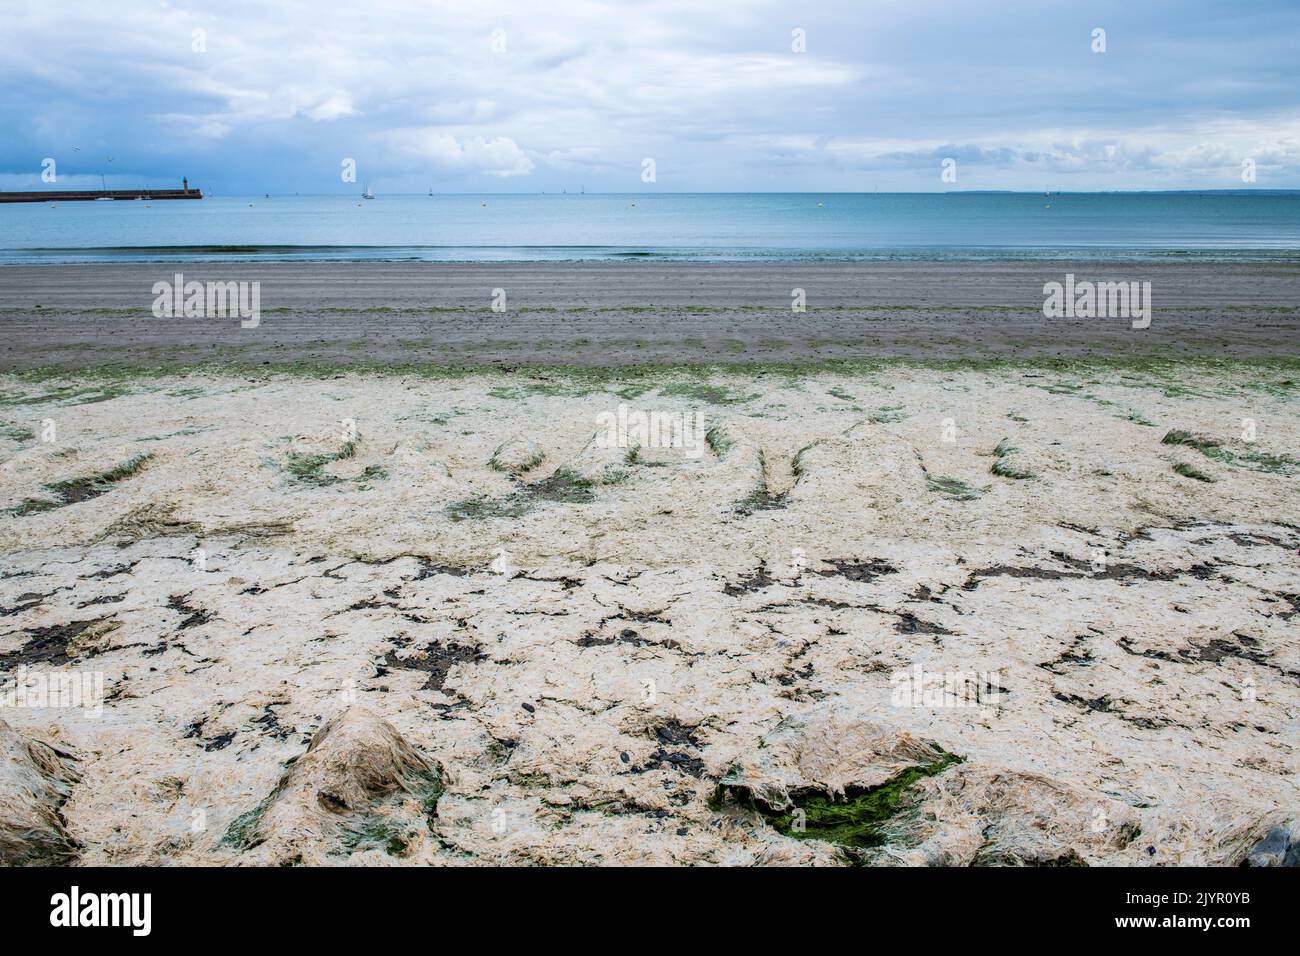 Depósitos de algas podridas en verano, Binic, Côtes d'Armor, Francia Foto de stock